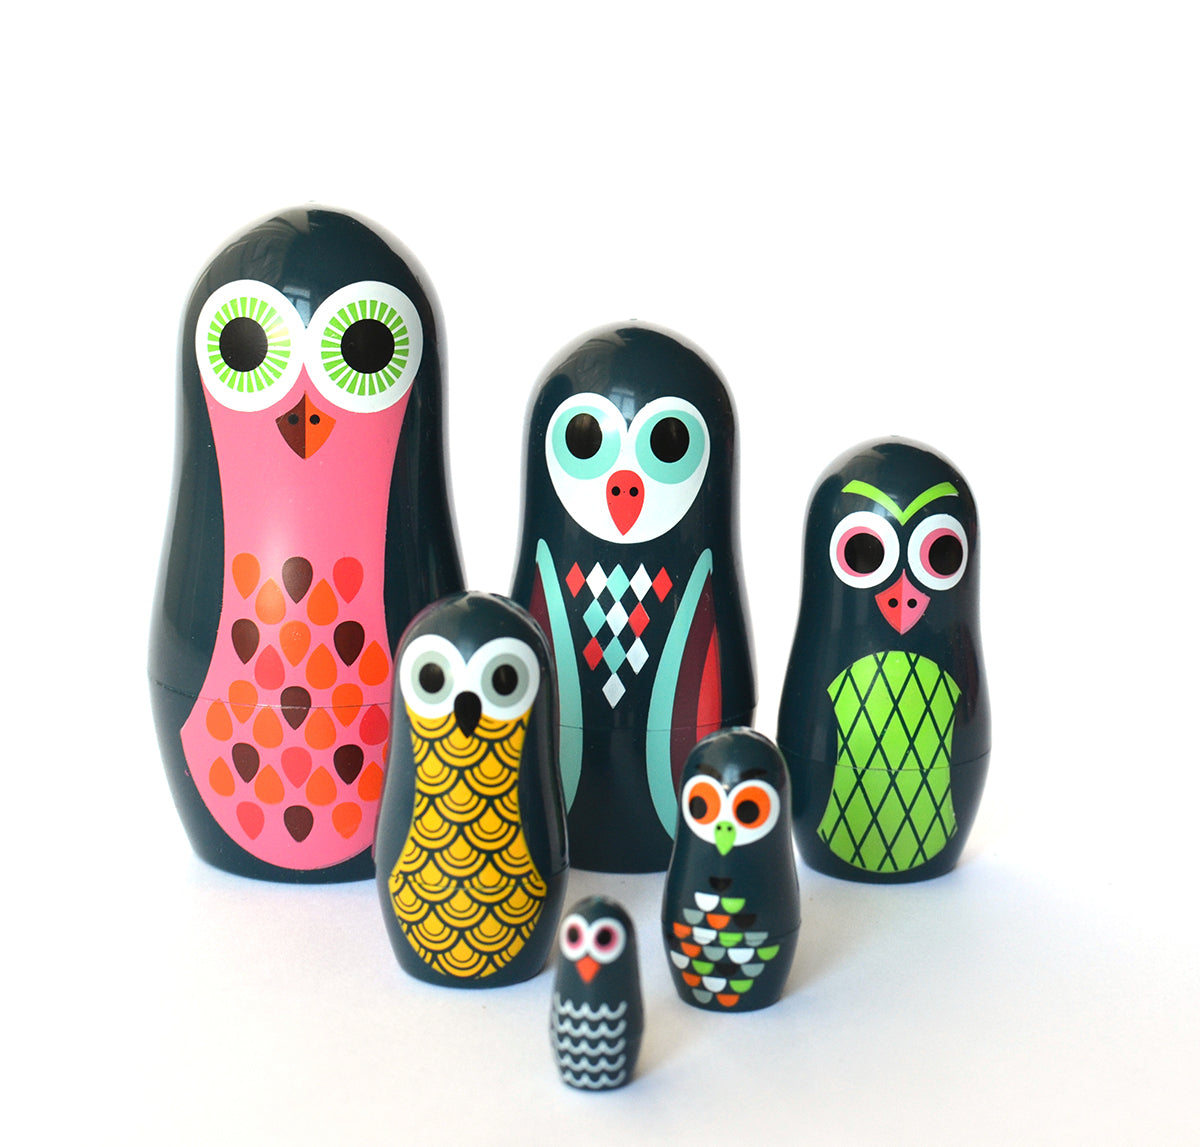 OMM Design Matryoshka "Pocket Owls"